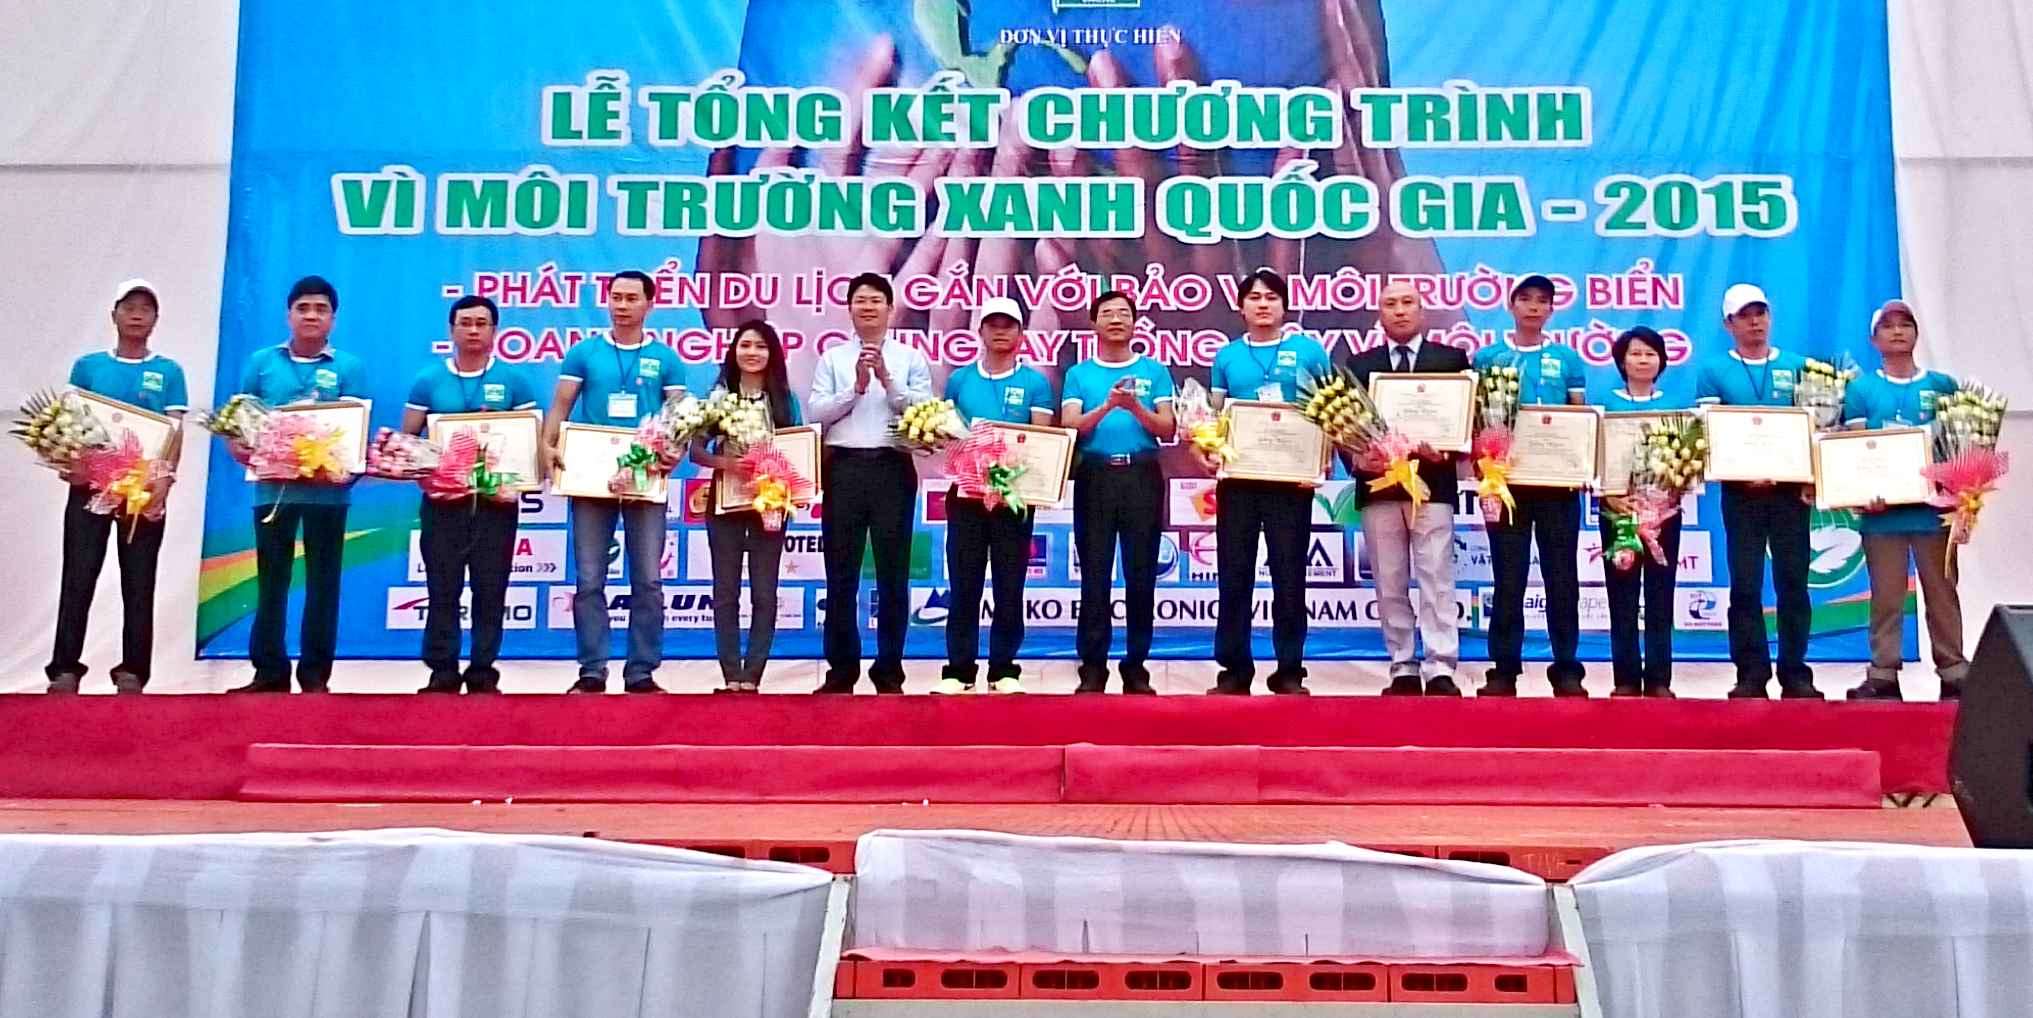 Giấy Sài Gòn chung tay cùng cộng đồng "Vì Môi Trường Xanh Quốc Gia năm 2015"